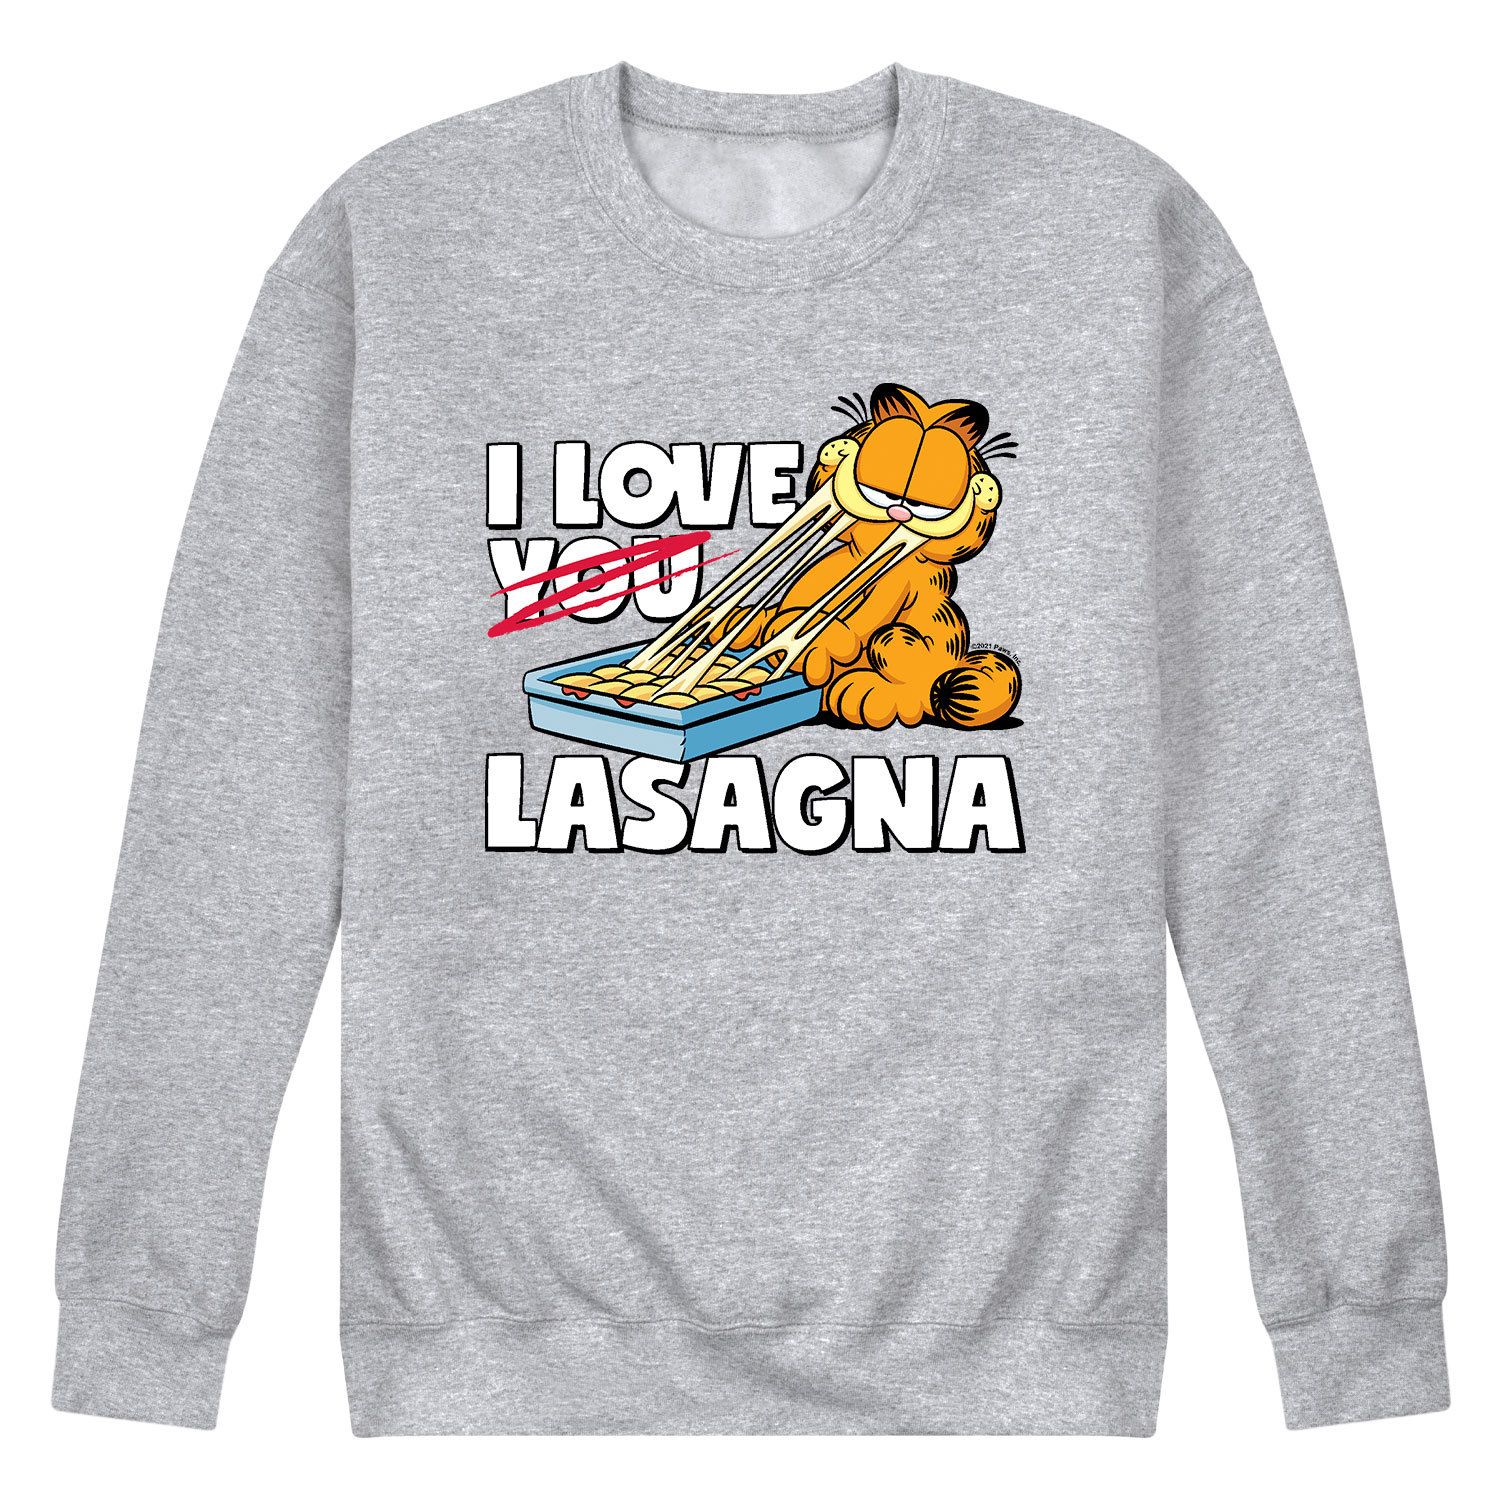 Мужской свитшот Garfield I Love Lasagna Licensed Character garfield lasagna party [switch]